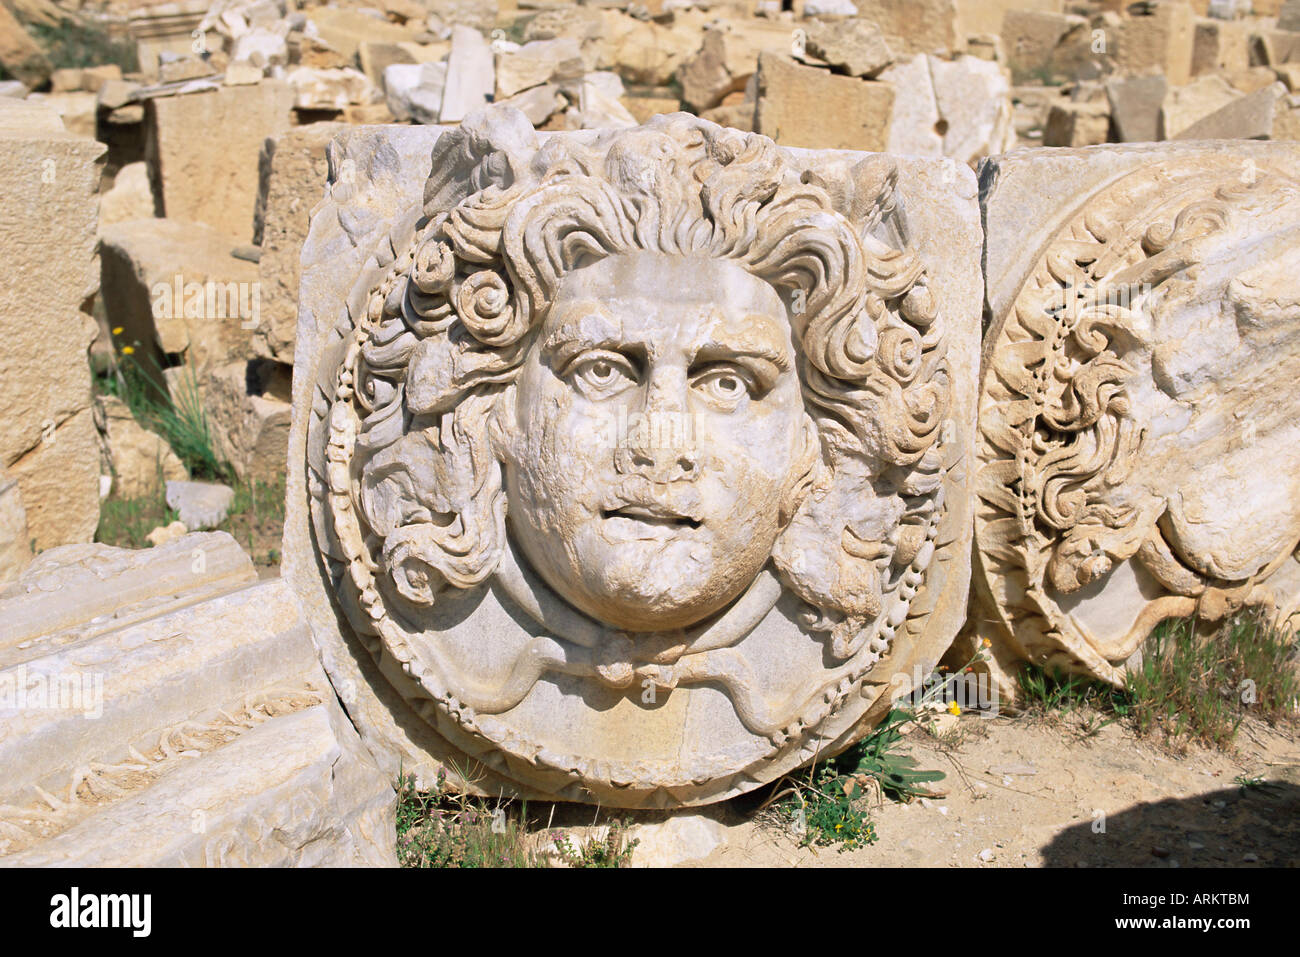 Tête de Gorgone, Dynastie Forum, site archéologique de Leptis Magna, Site du patrimoine mondial de l'UNESCO, la Tripolitaine, la Libye, l'Afrique du Nord Banque D'Images